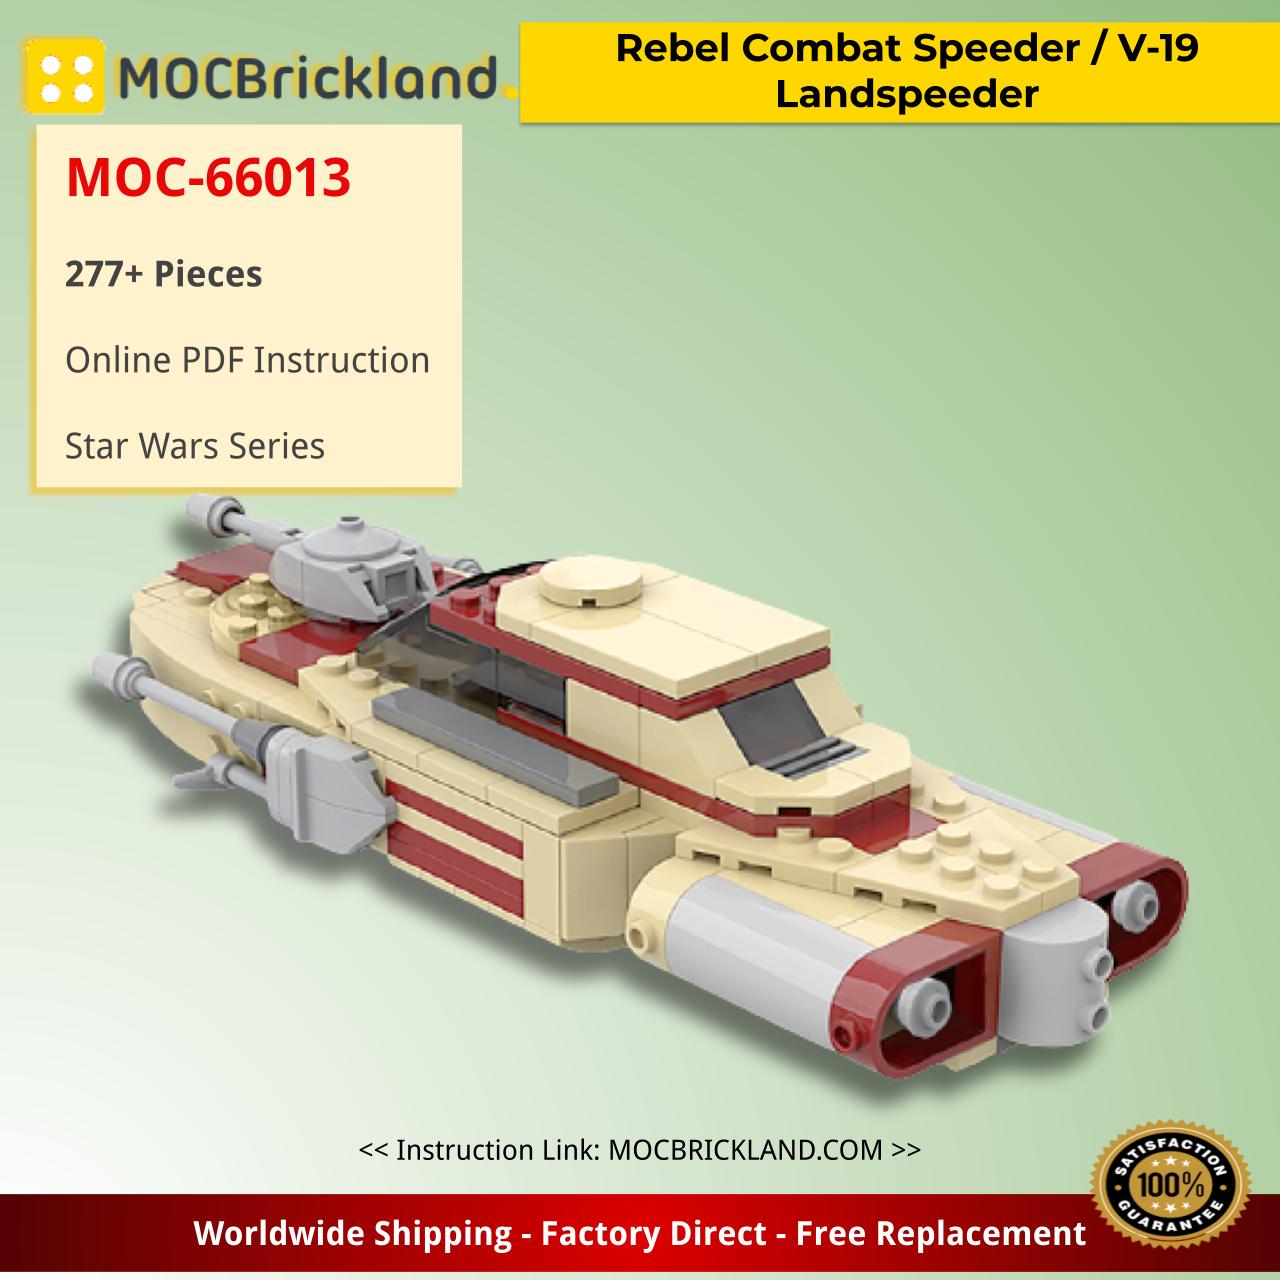 MOCBRICKLAND MOC-66013 Rebel Combat Speeder / V-19 Landspeeder